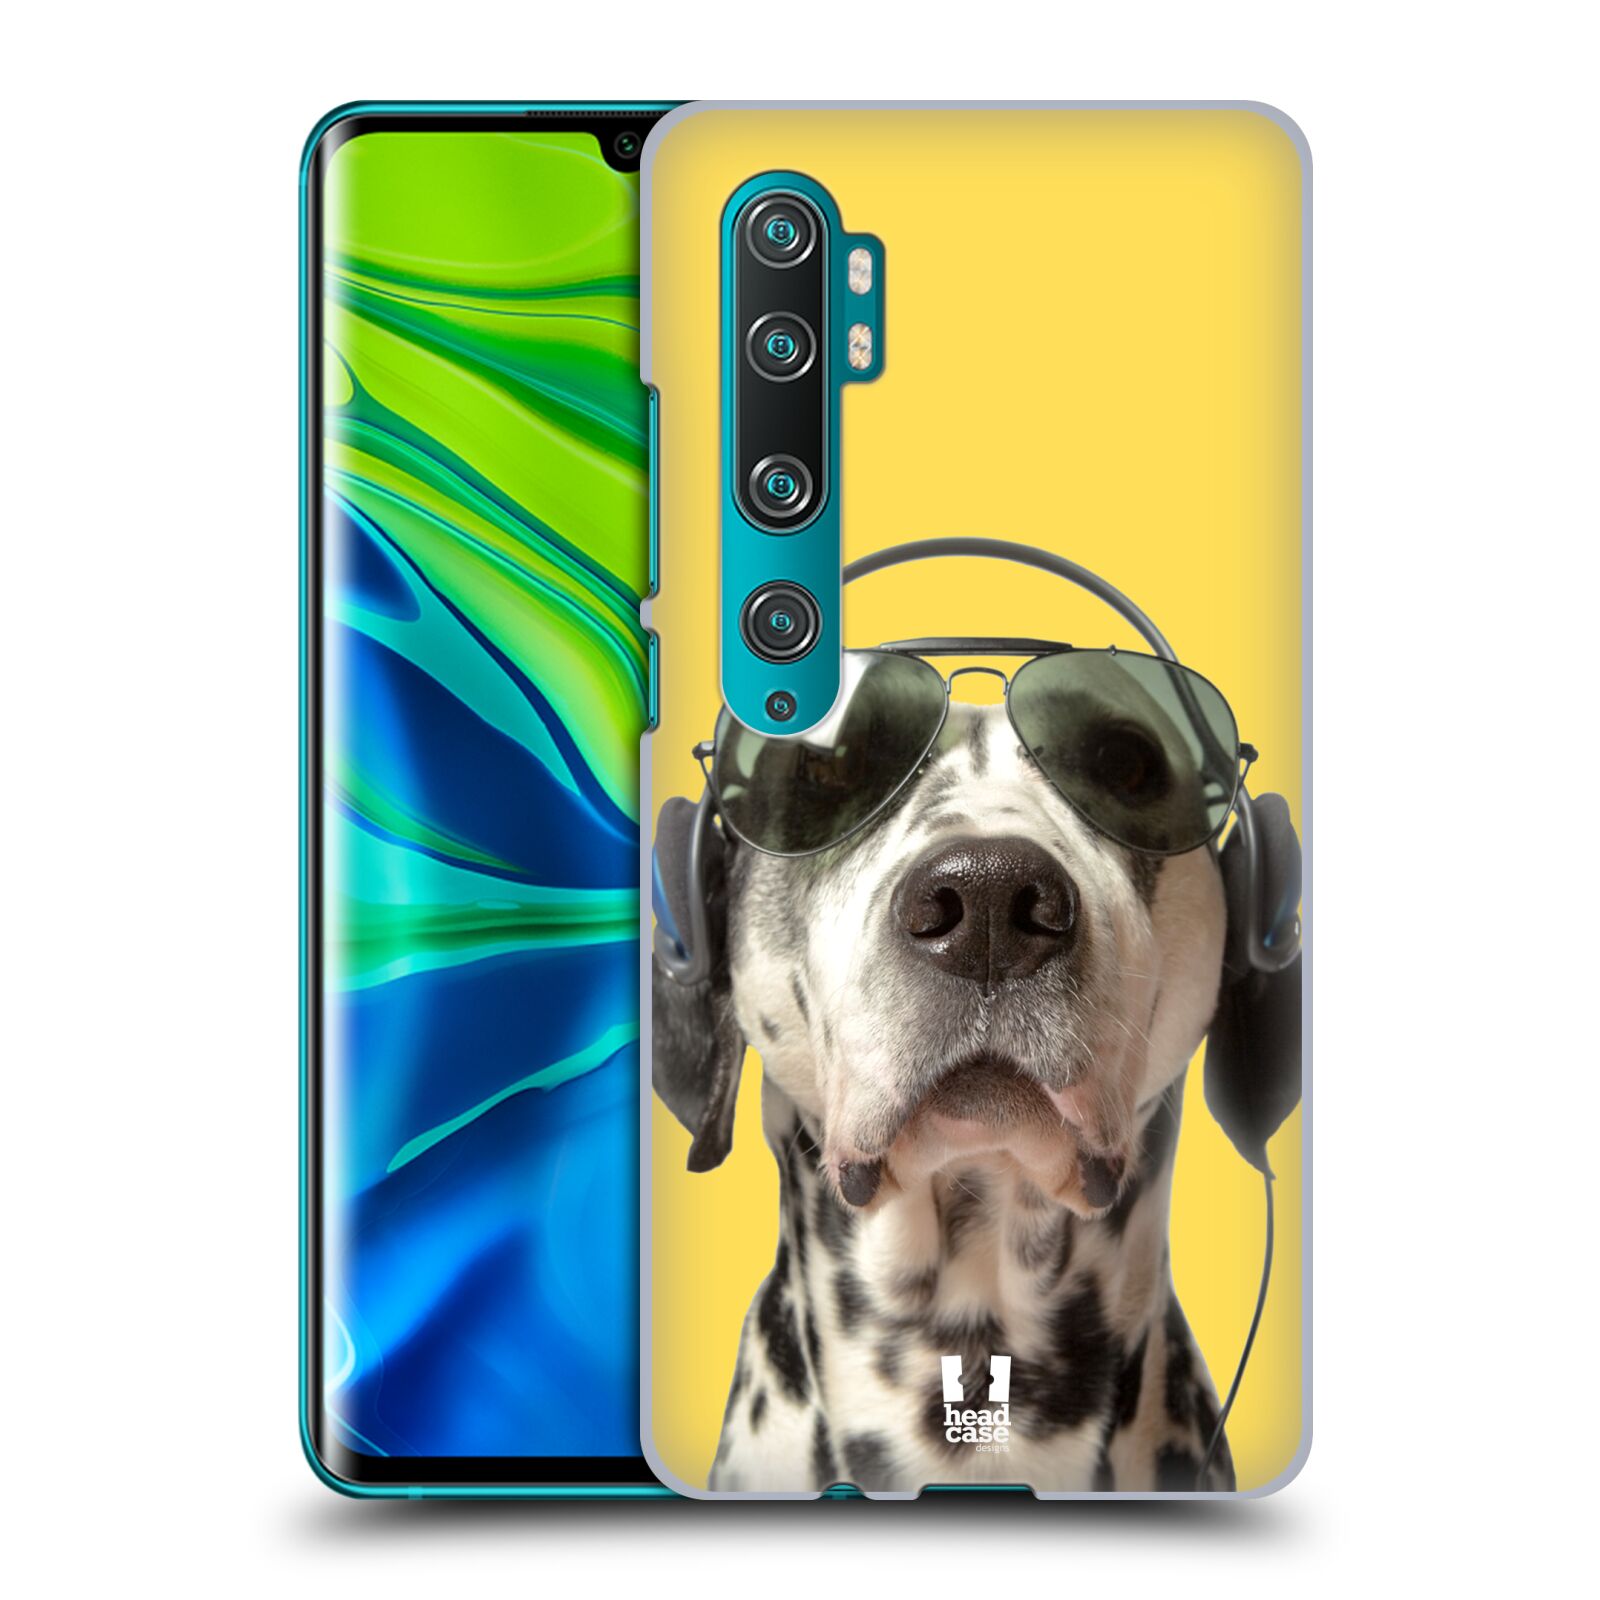 Pouzdro na mobil Xiaomi Mi Note 10 / Mi Note 10 PRO - HEAD CASE - vzor Legrační zvířátka dalmatin se sluchátky žlutá